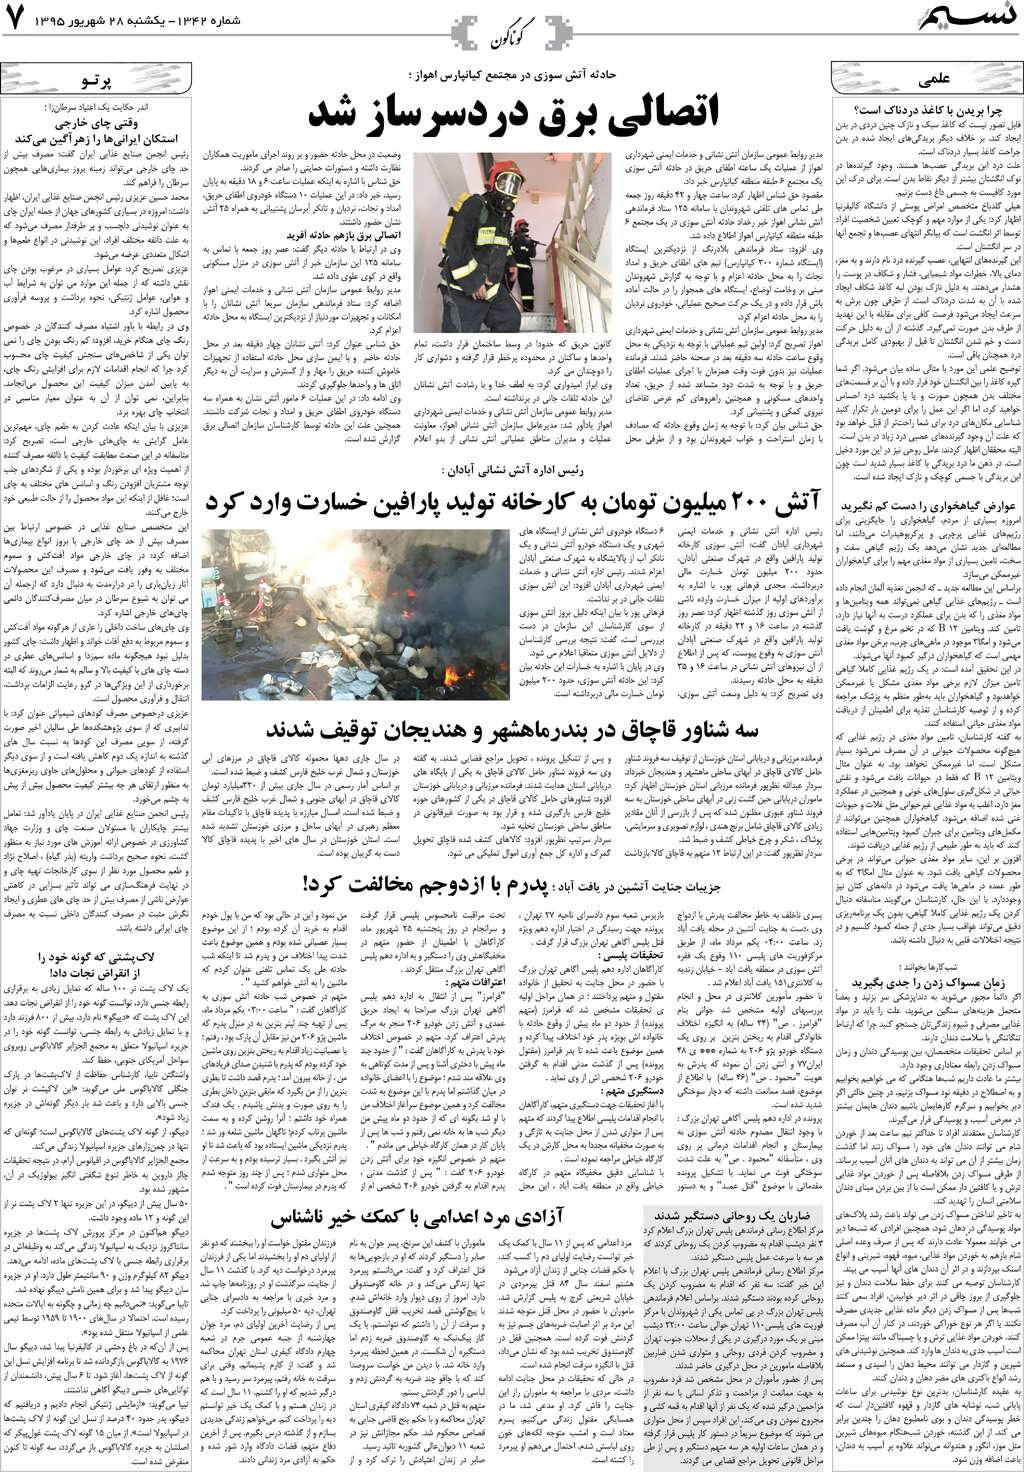 صفحه گوناگون روزنامه نسیم شماره 1342